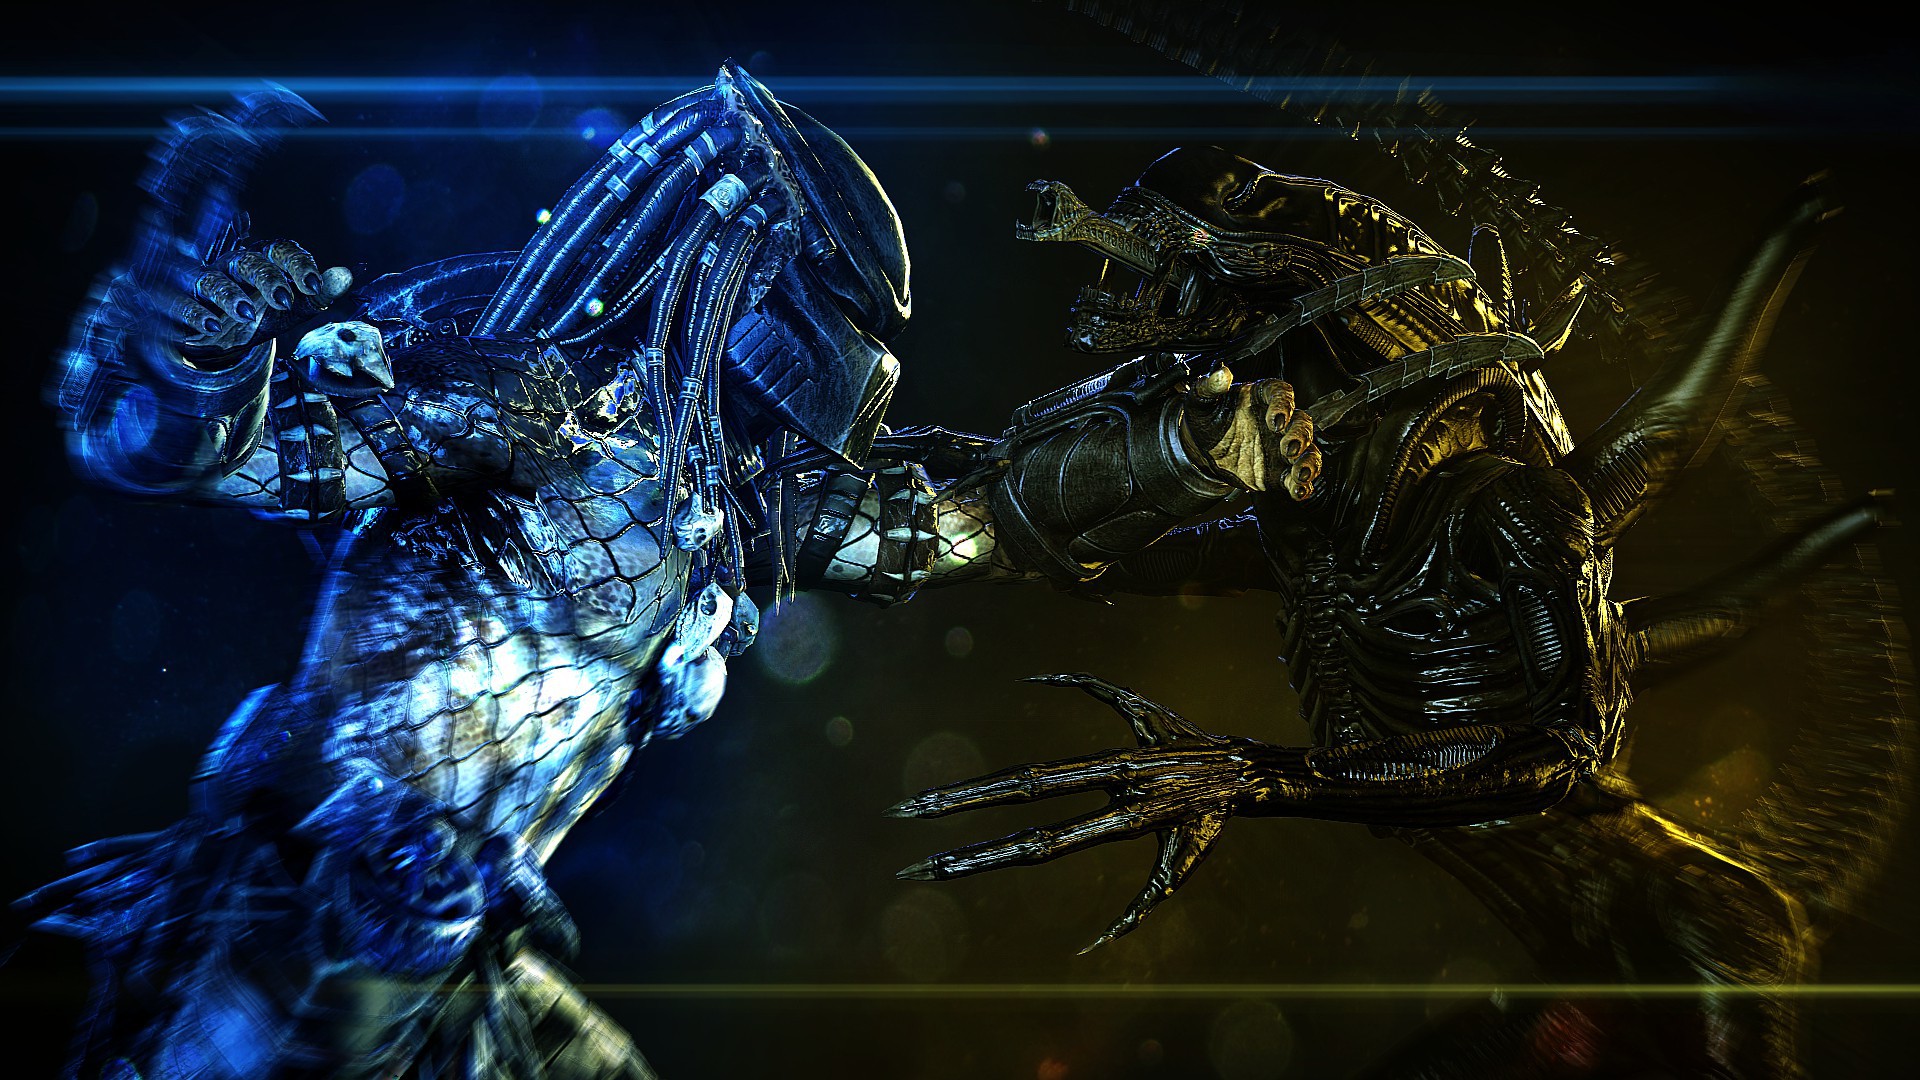 Alien và Predator: Số phận mù mịt của hai kẻ săn mồi trong tay chuột nhắt